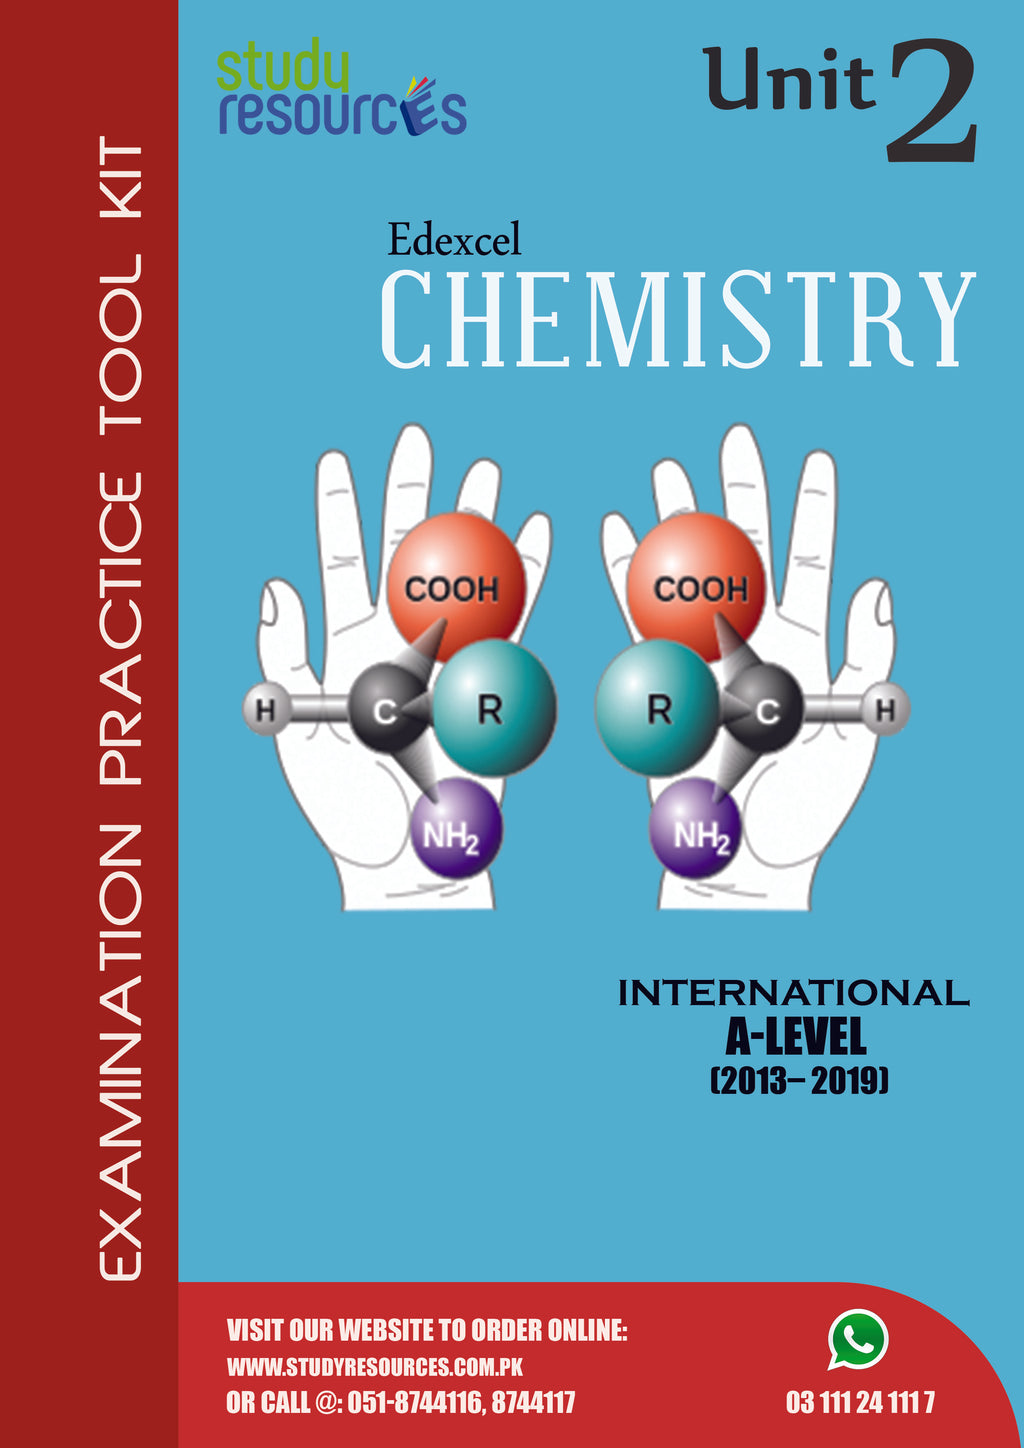 Edexcel A-Level Chemistry Unit-2 Past Papers (2013-2019)